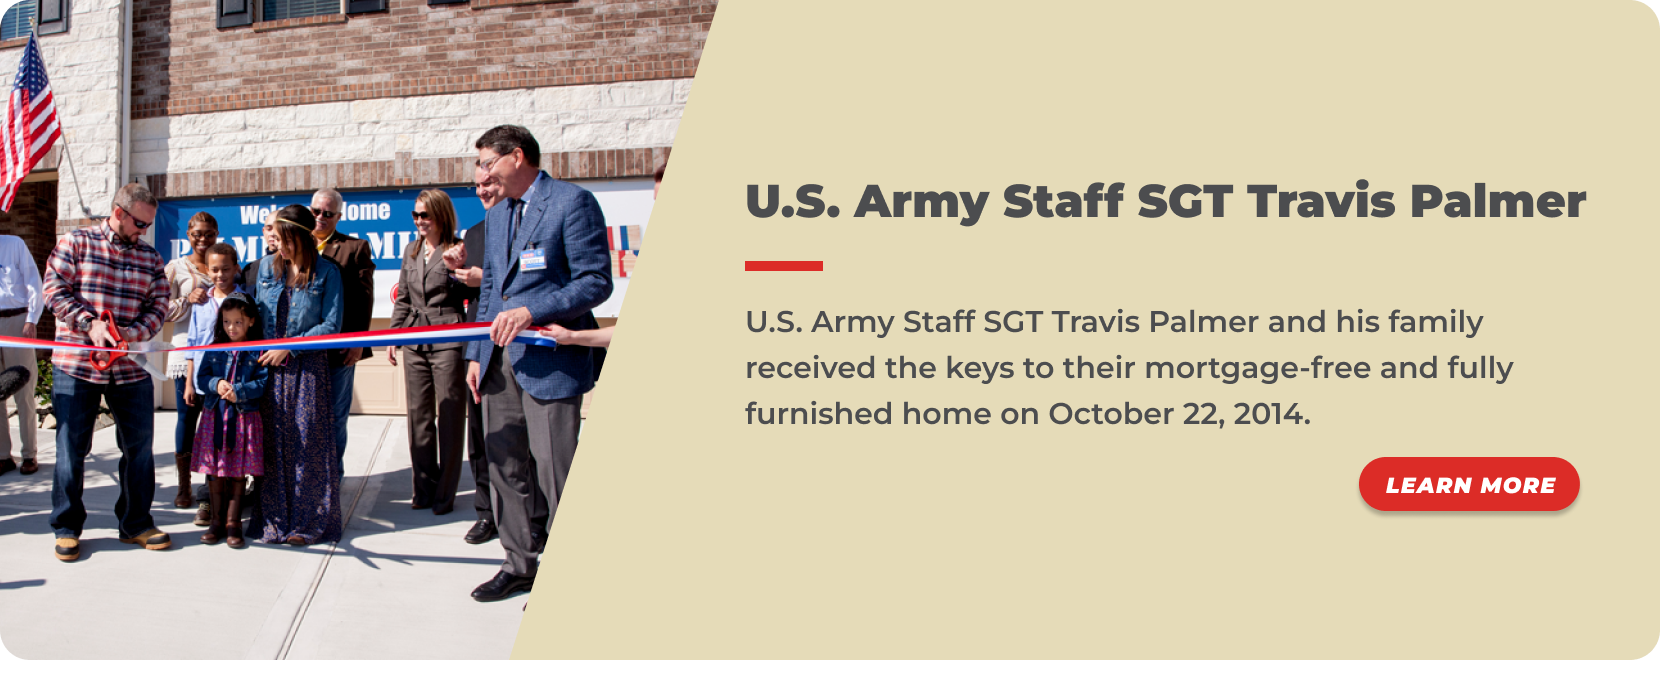 5 -U.S. Army Staff SGT Travis Palmer